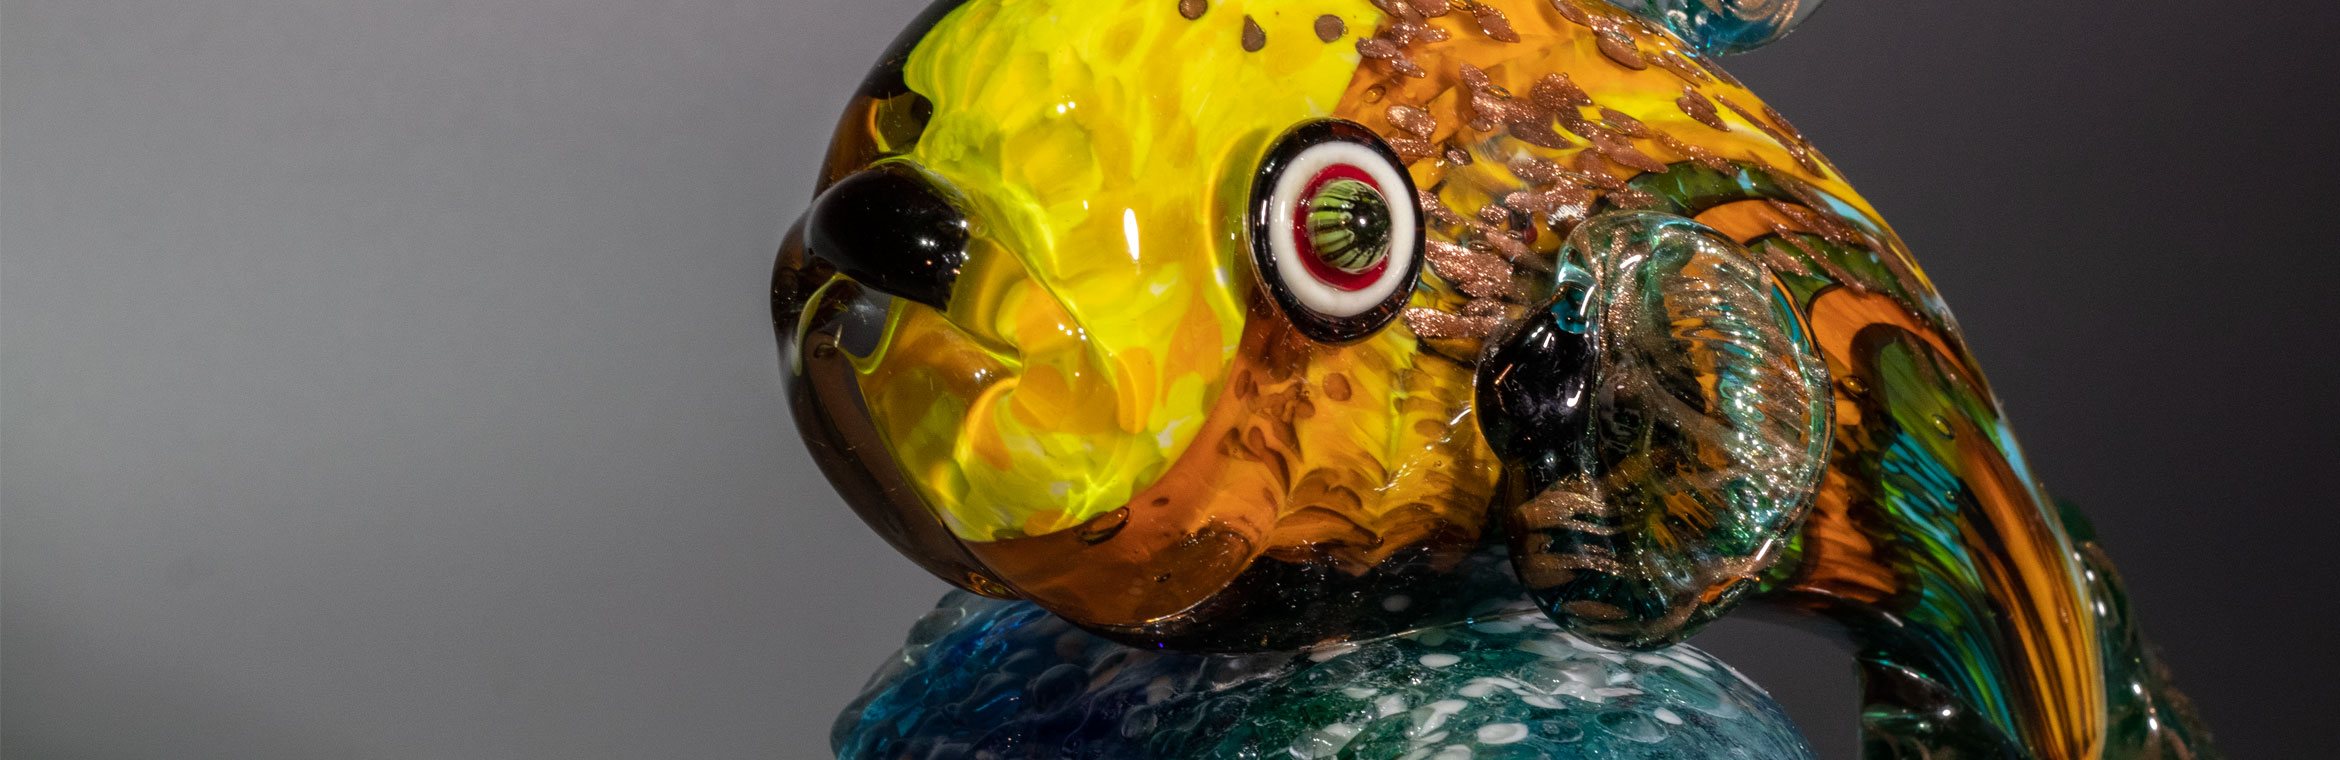 Композиция из цветного стекла "Золотая рыбка"